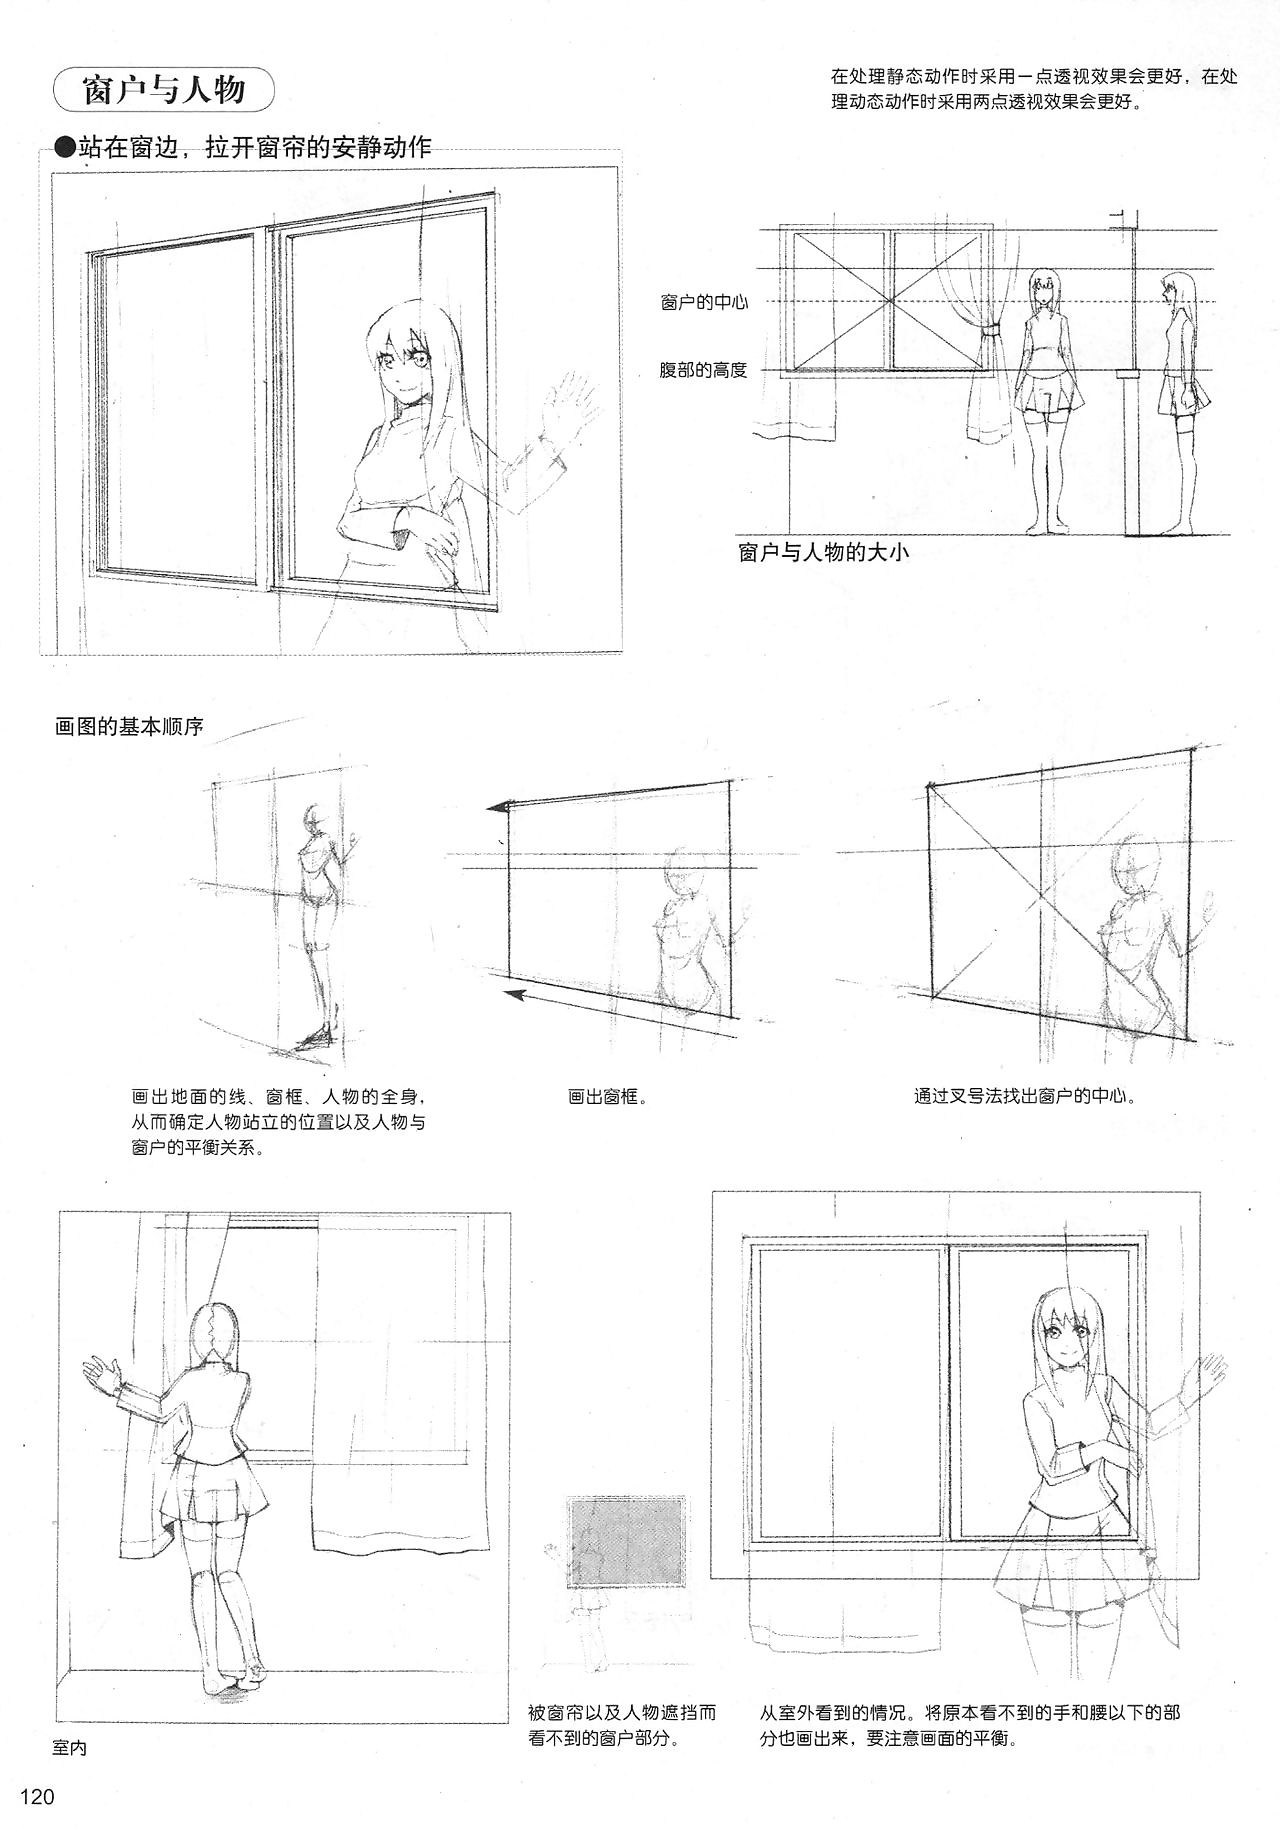 に関わらず どのよう 横 姿勢 manga: スケッチ マンガ スタイル 広がり 4: 月 すべての 面 こちらの 健 誠実さ 7